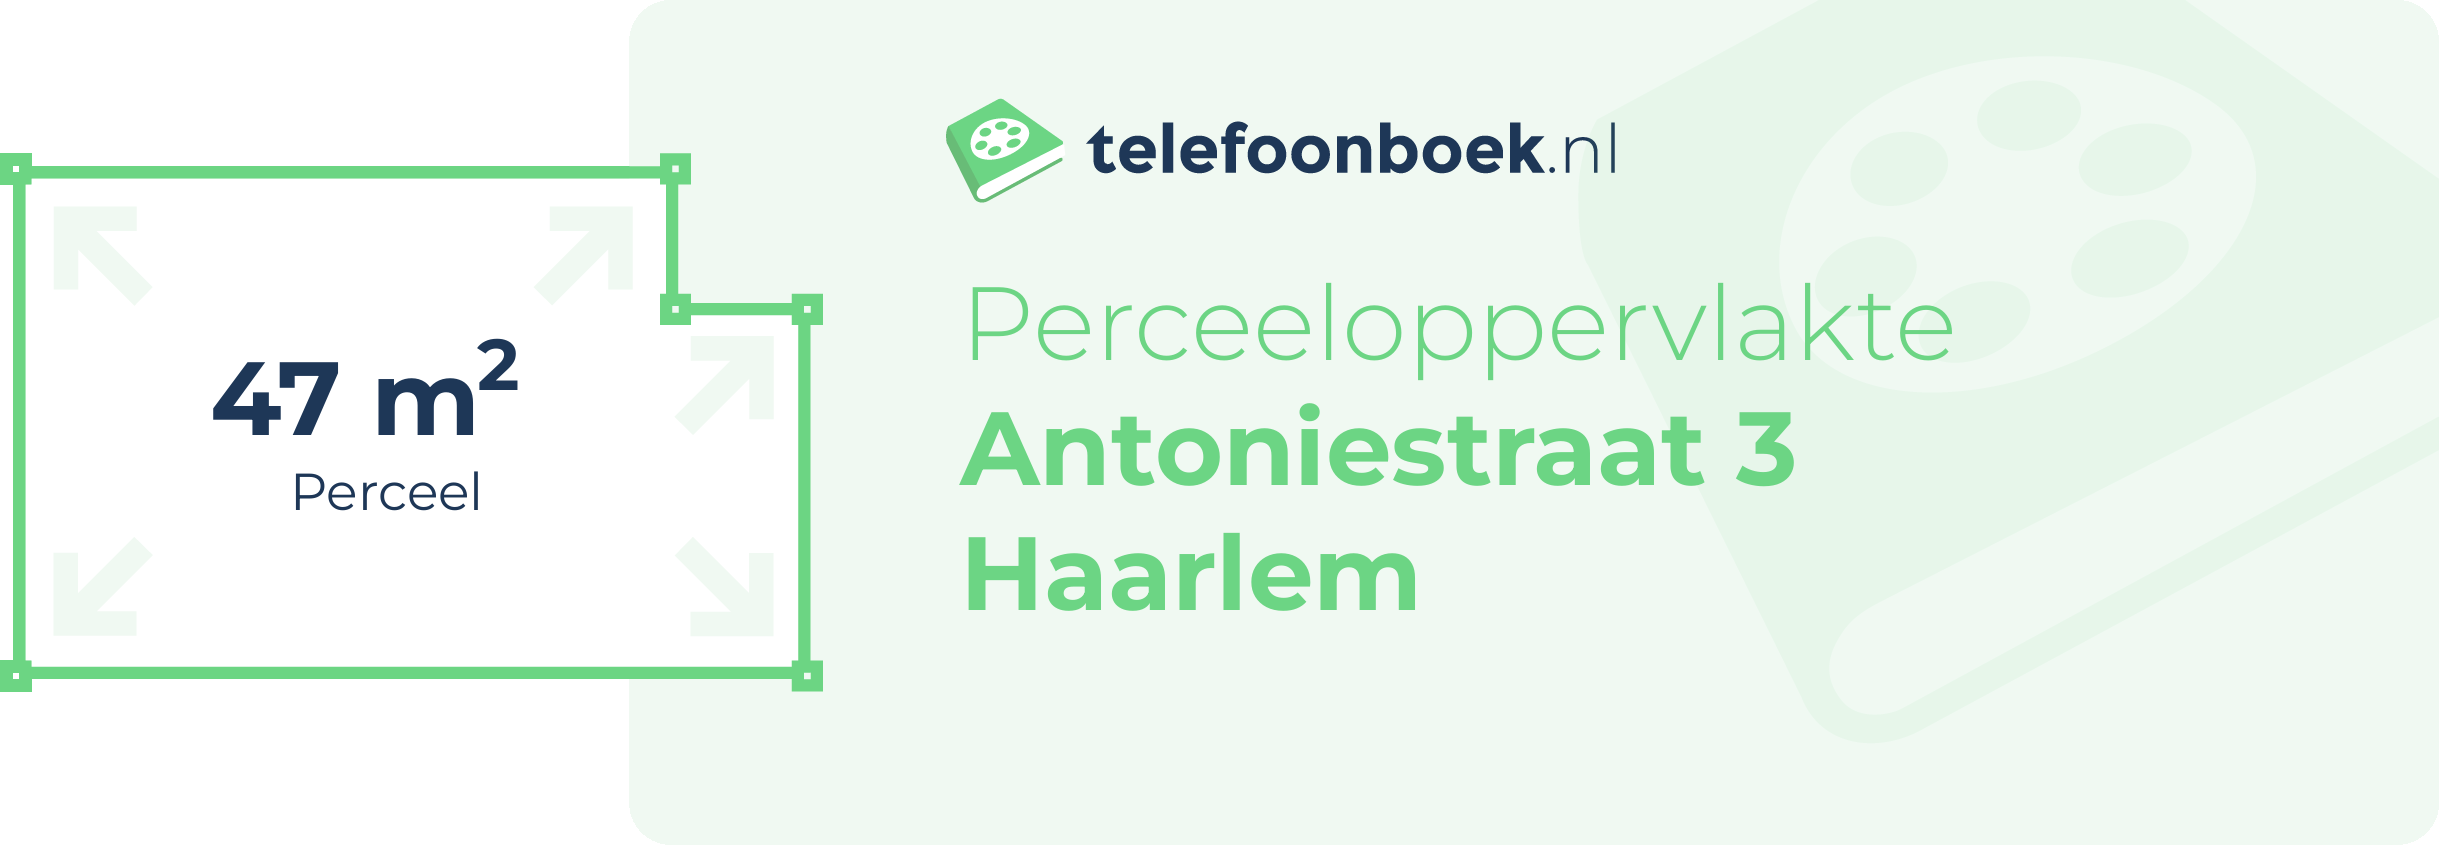 Perceeloppervlakte Antoniestraat 3 Haarlem